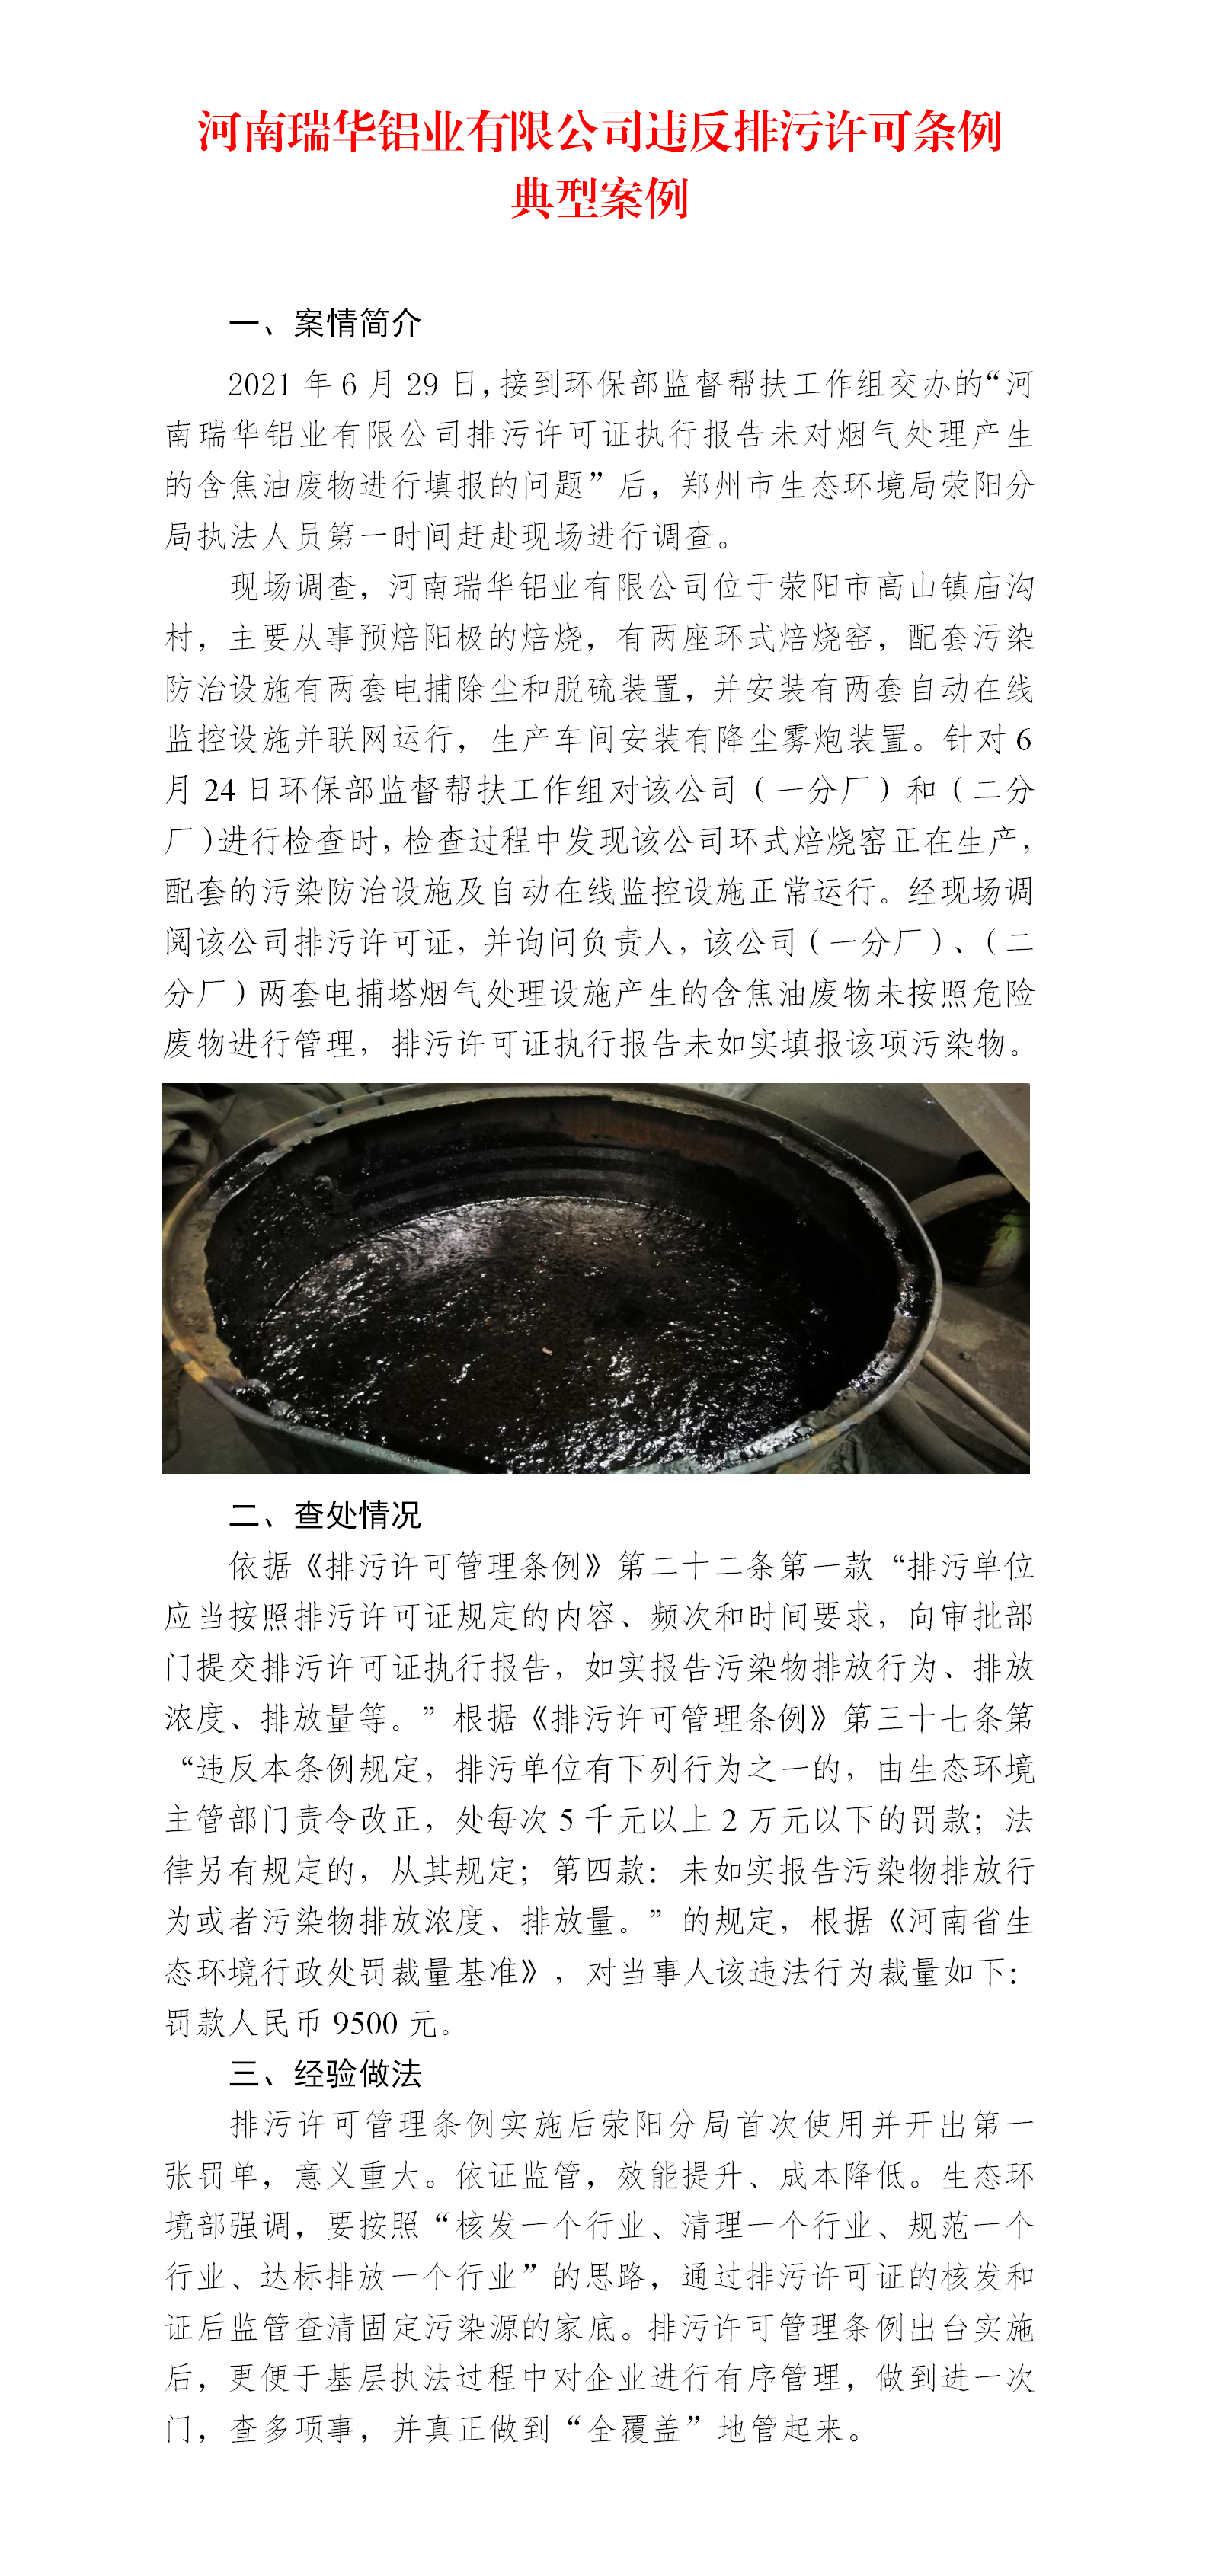 河南瑞华铝业有限公司违反排污许可条例典型案例_01.png